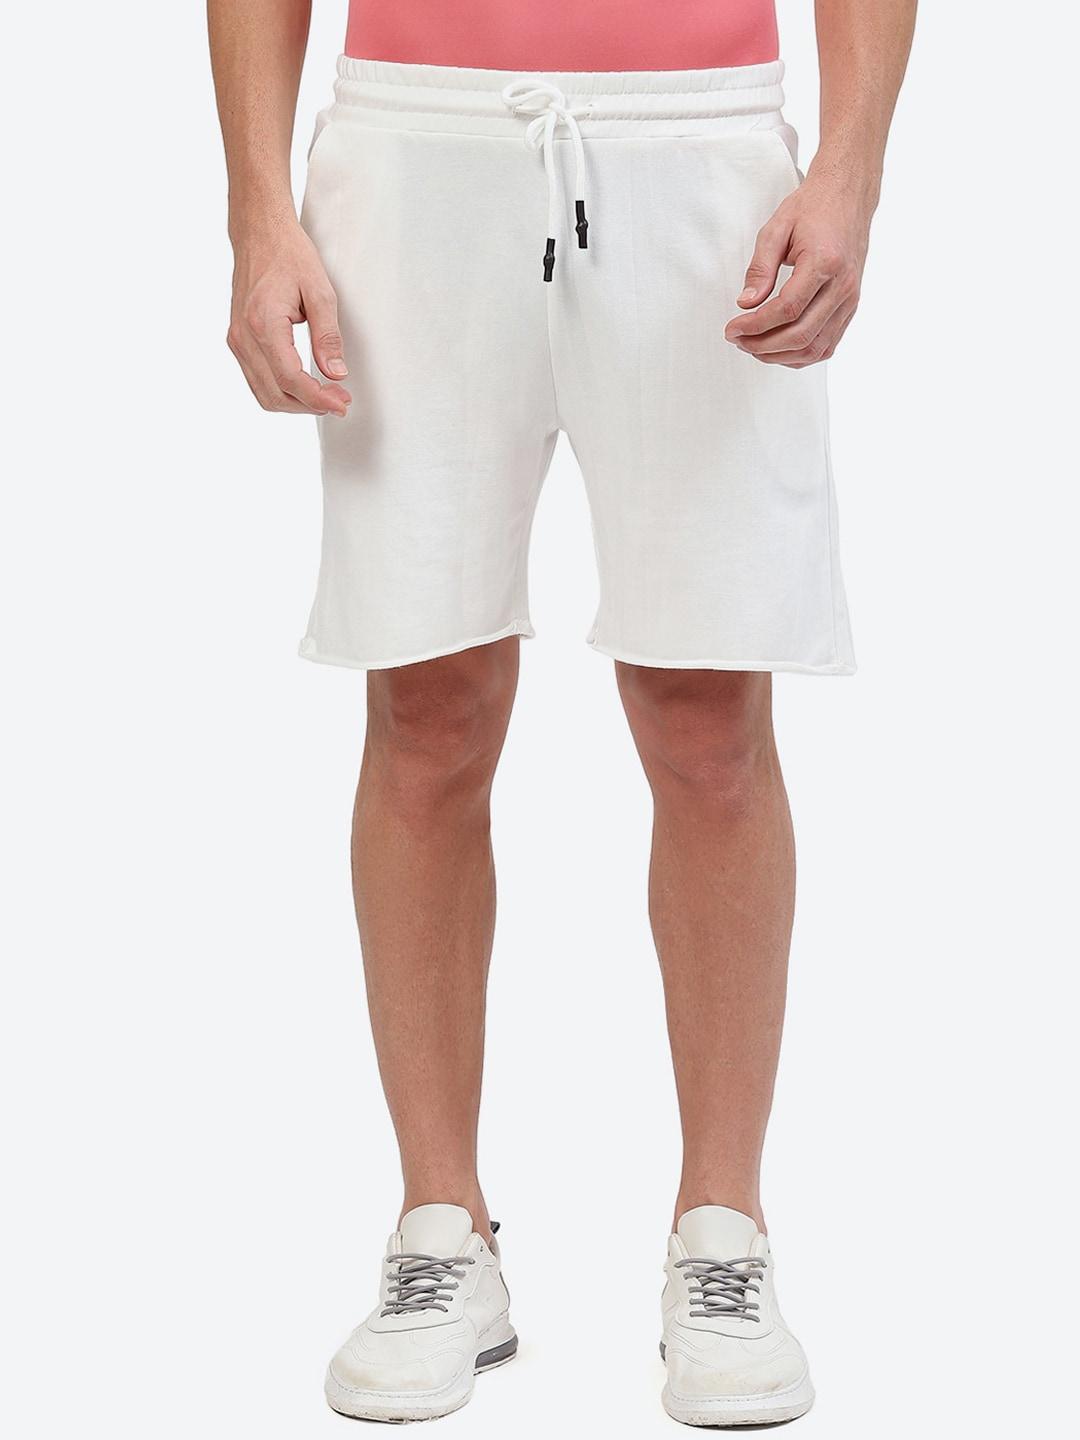 2bme men mid-rise regular fit cotton sports shorts